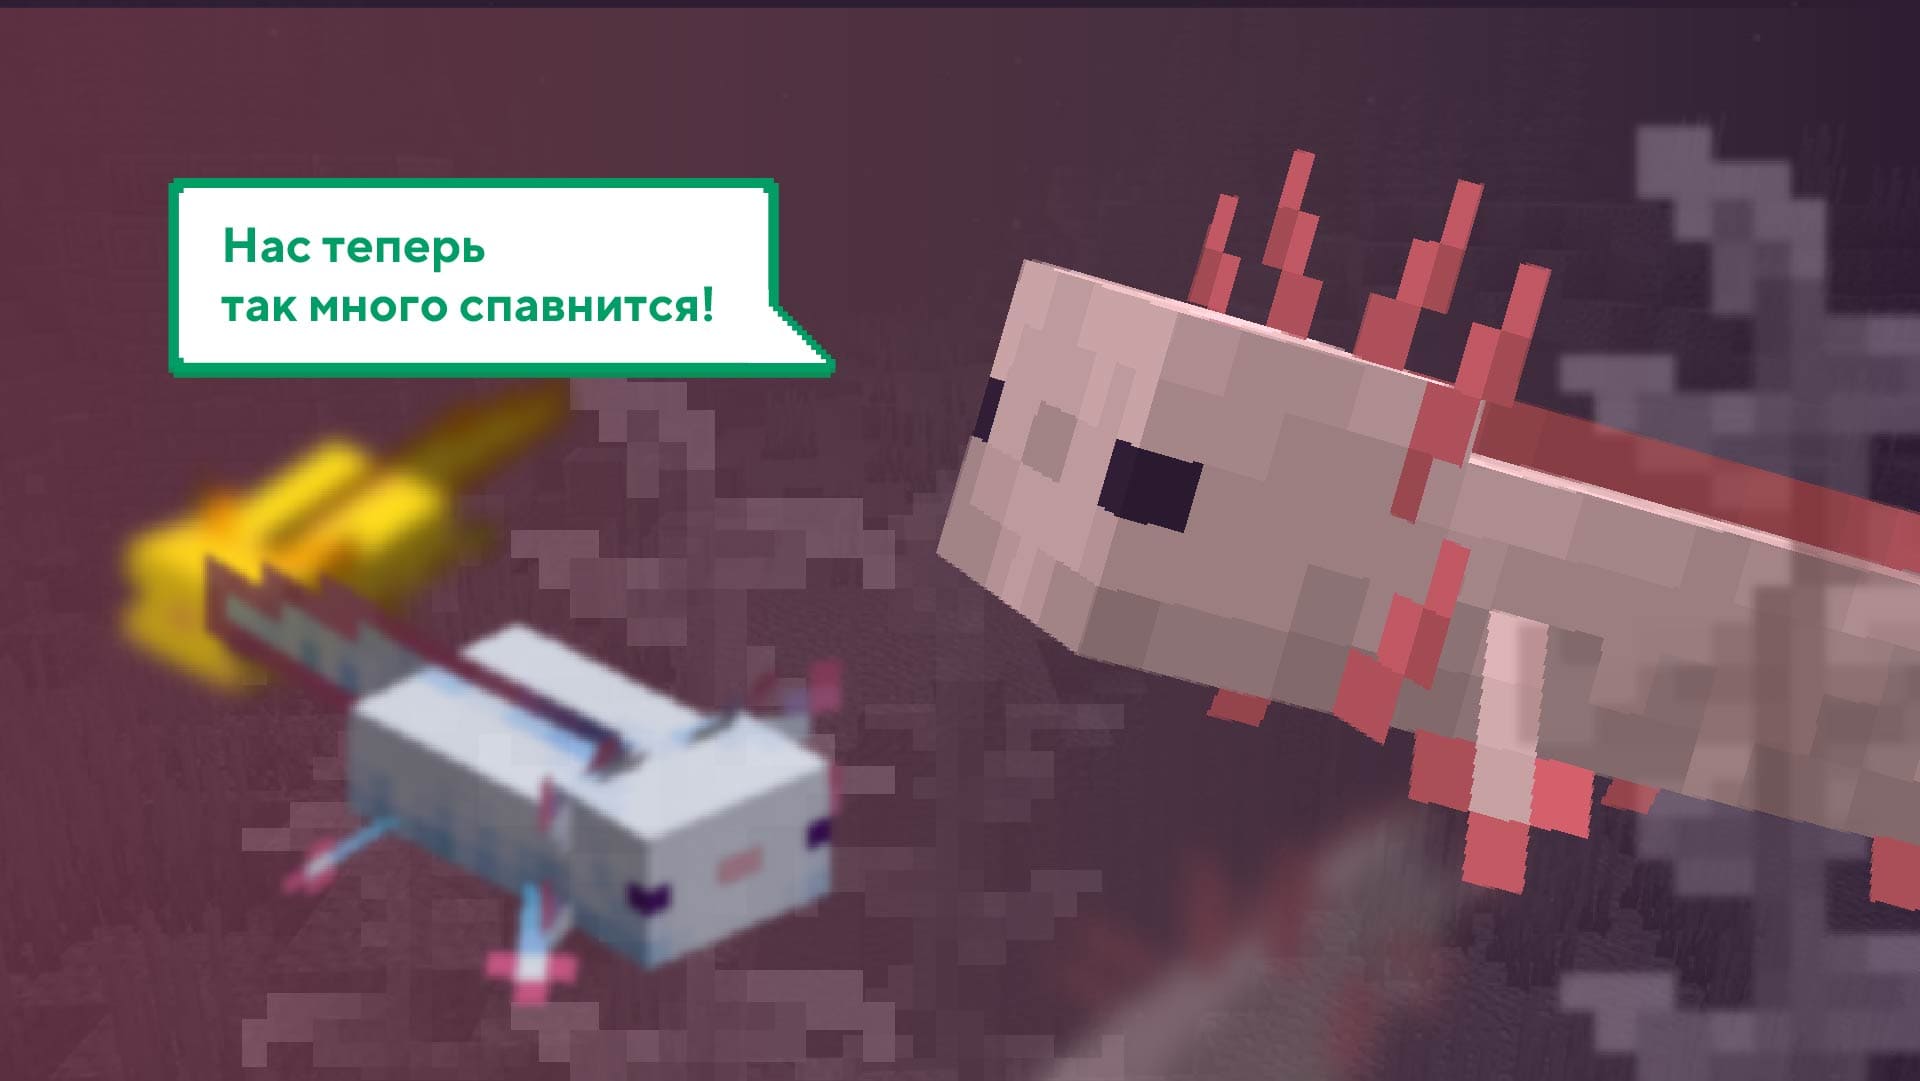 ⭐Nova Versão Minecraft 1.17.0.50 Beta❕ Luneta e Cristal💎